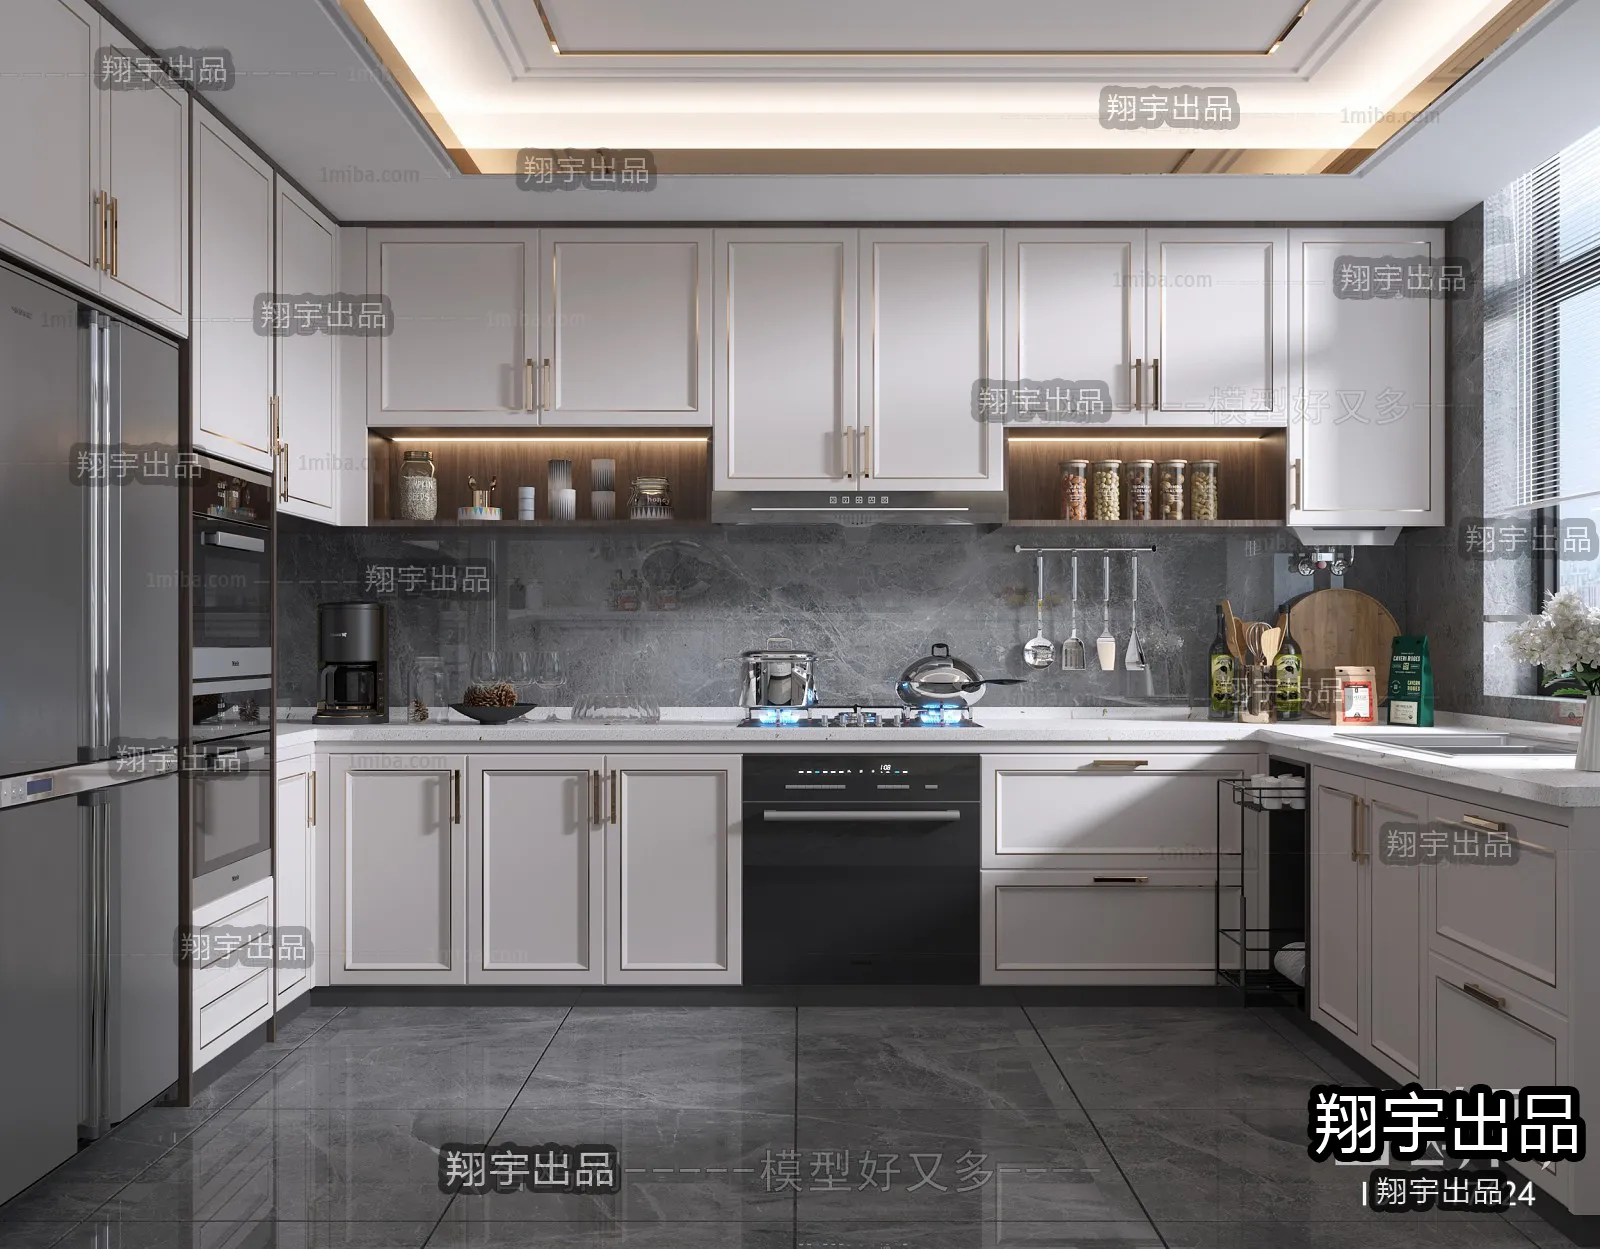 Kitchen – Modern Design – 3D66 – 3D Scenes – 002